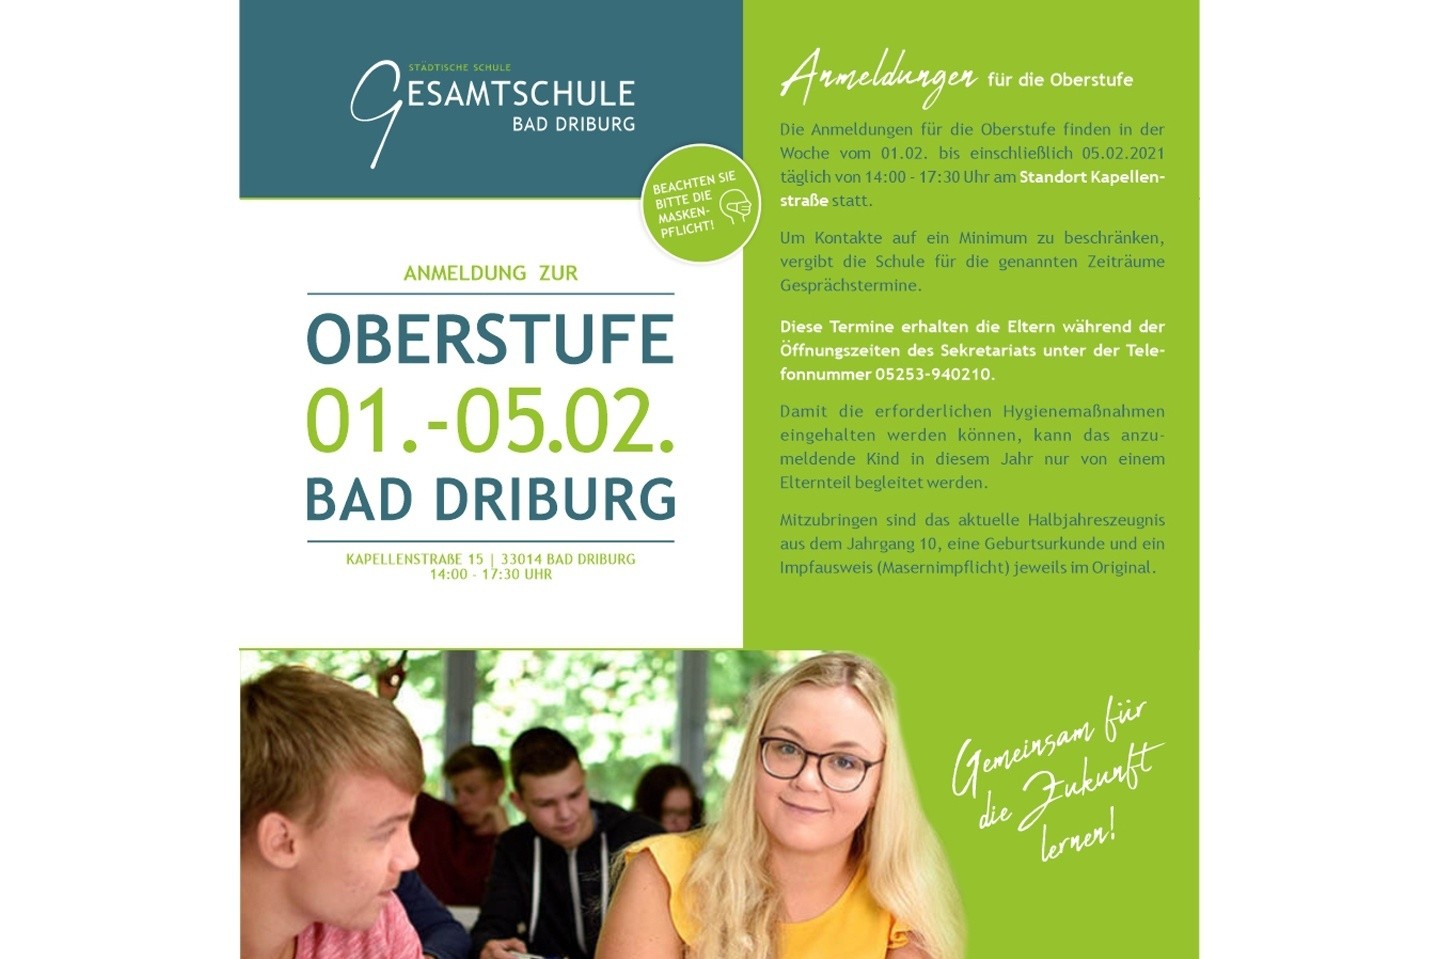 Anmeldung für die Oberstufe der Gesamtschule Bad Driburg am 01.-05.02.2021